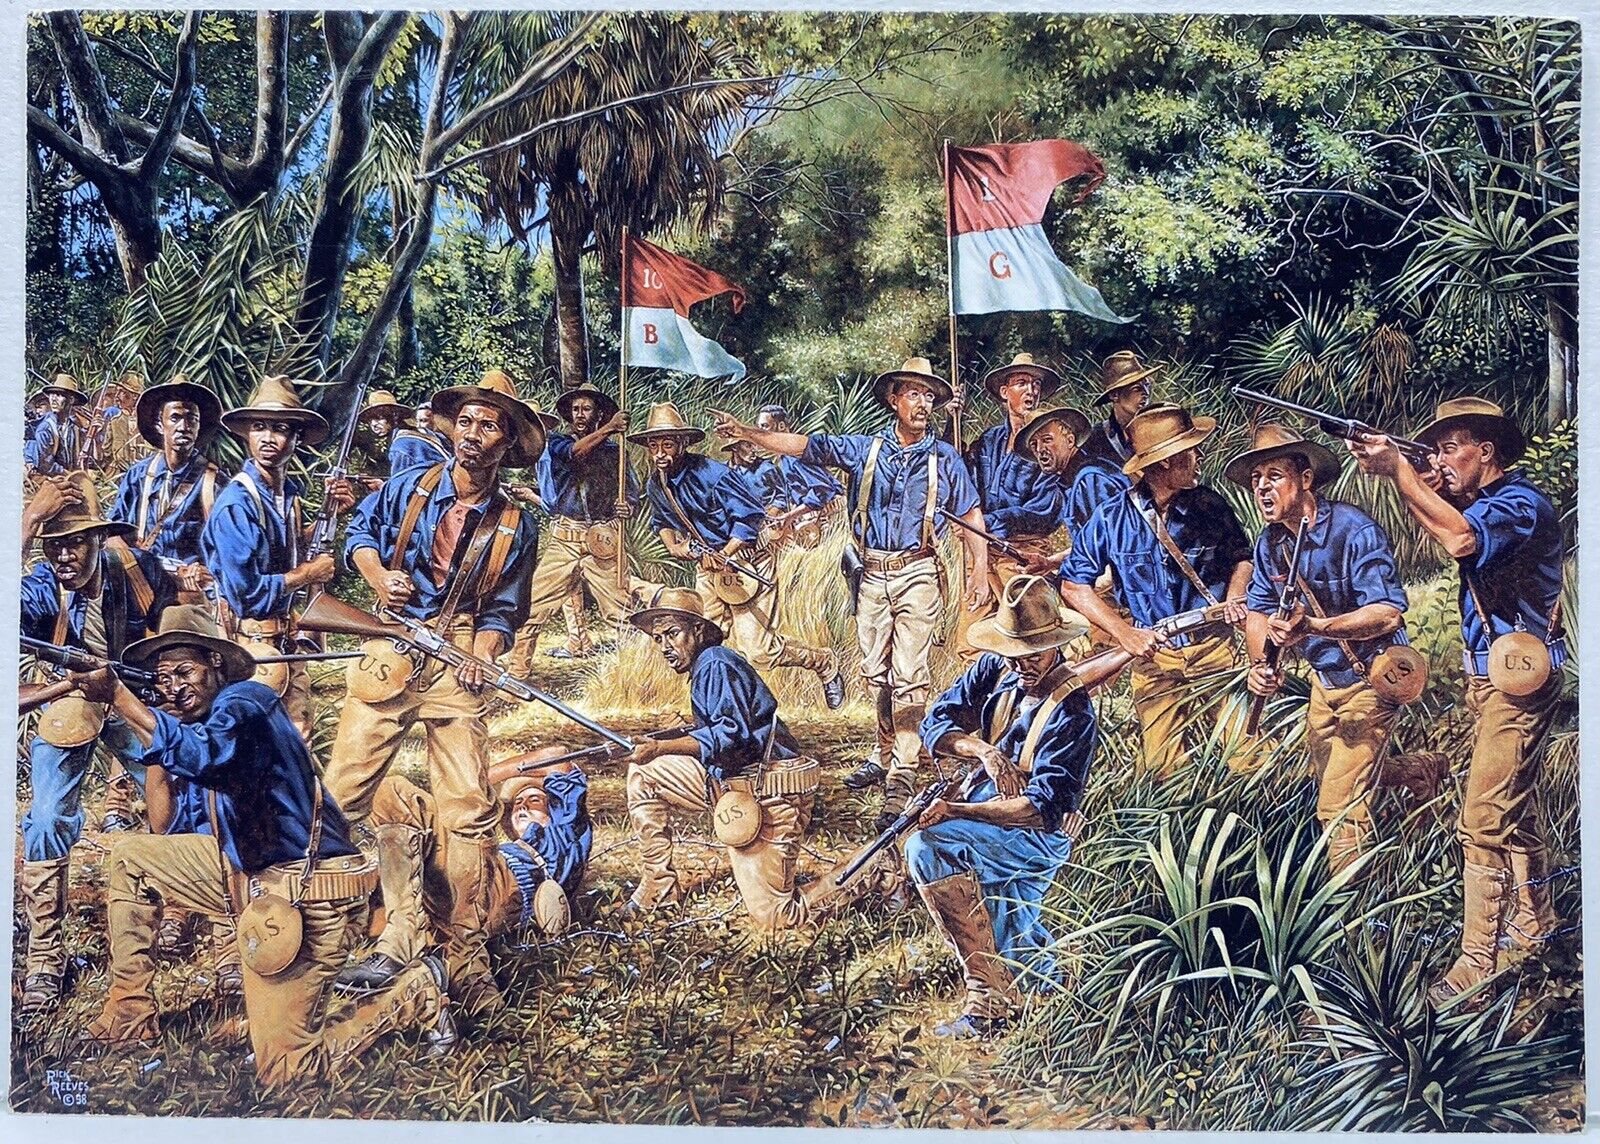 Rick Reeves American Soldiers Las Guasimas Cuba Civil War Photo Postcard